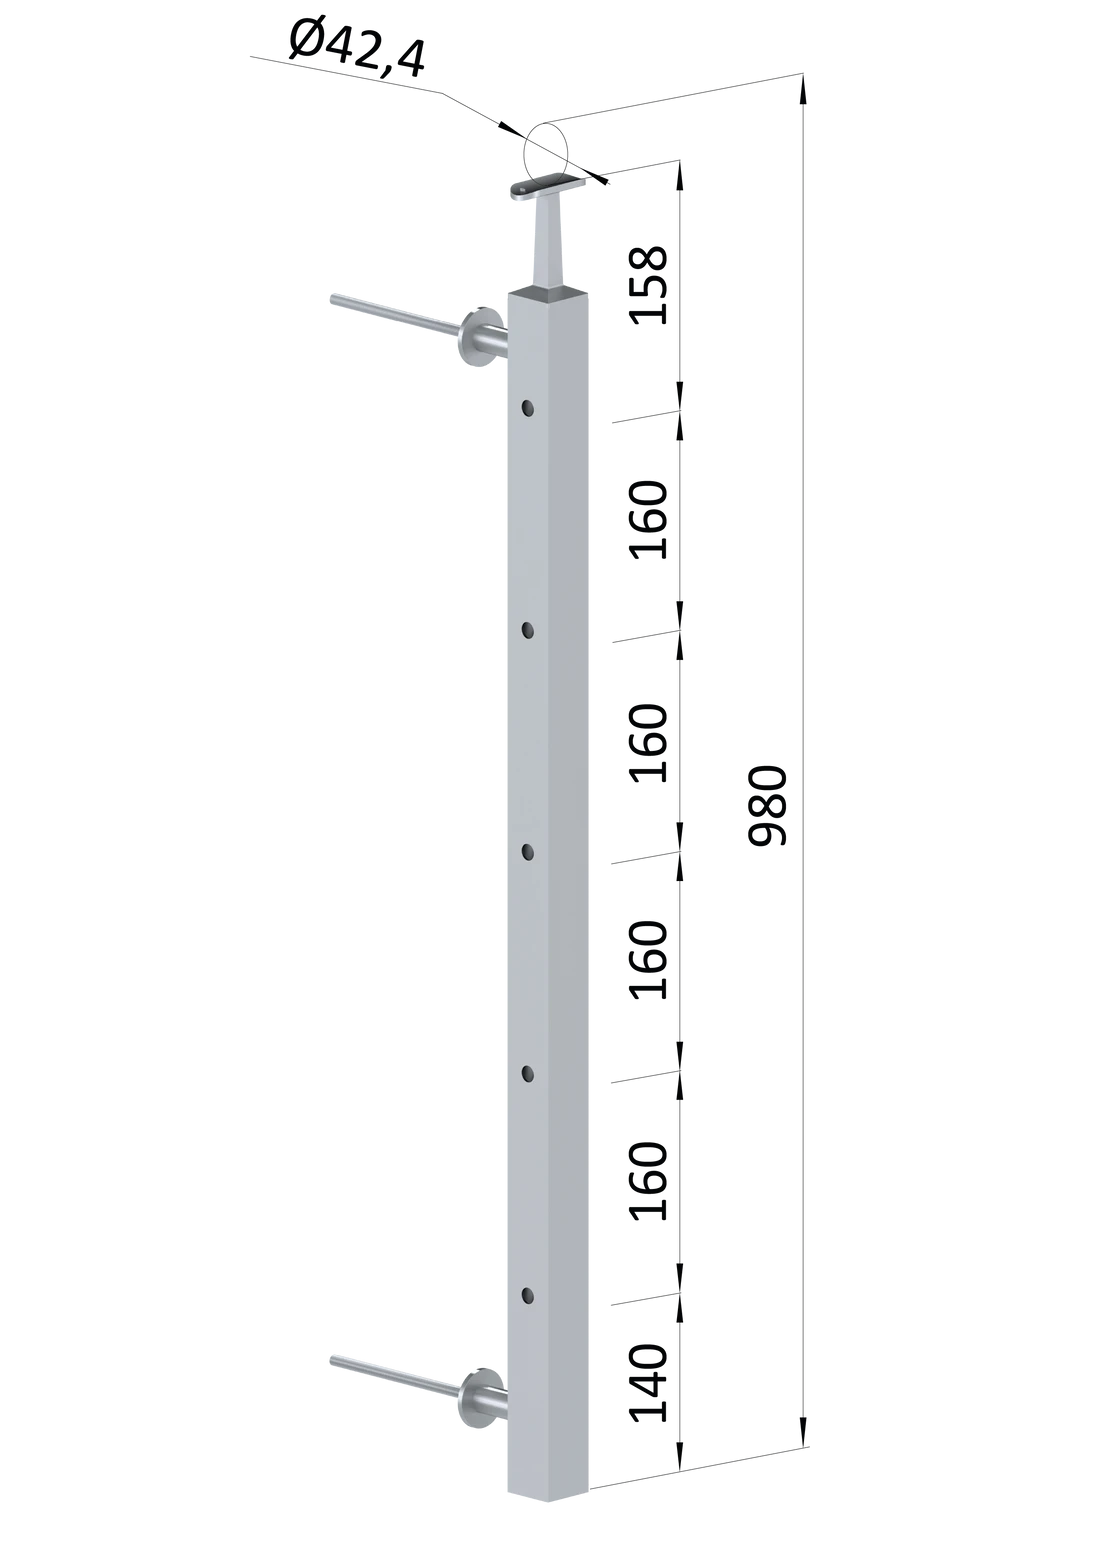 Nerezový sloup na francouzský balkón, boční kotvení, 5 dírový, průchozí, vrch pevný, (40x40x2.0 mm), broušená nerez K320 /AISI304